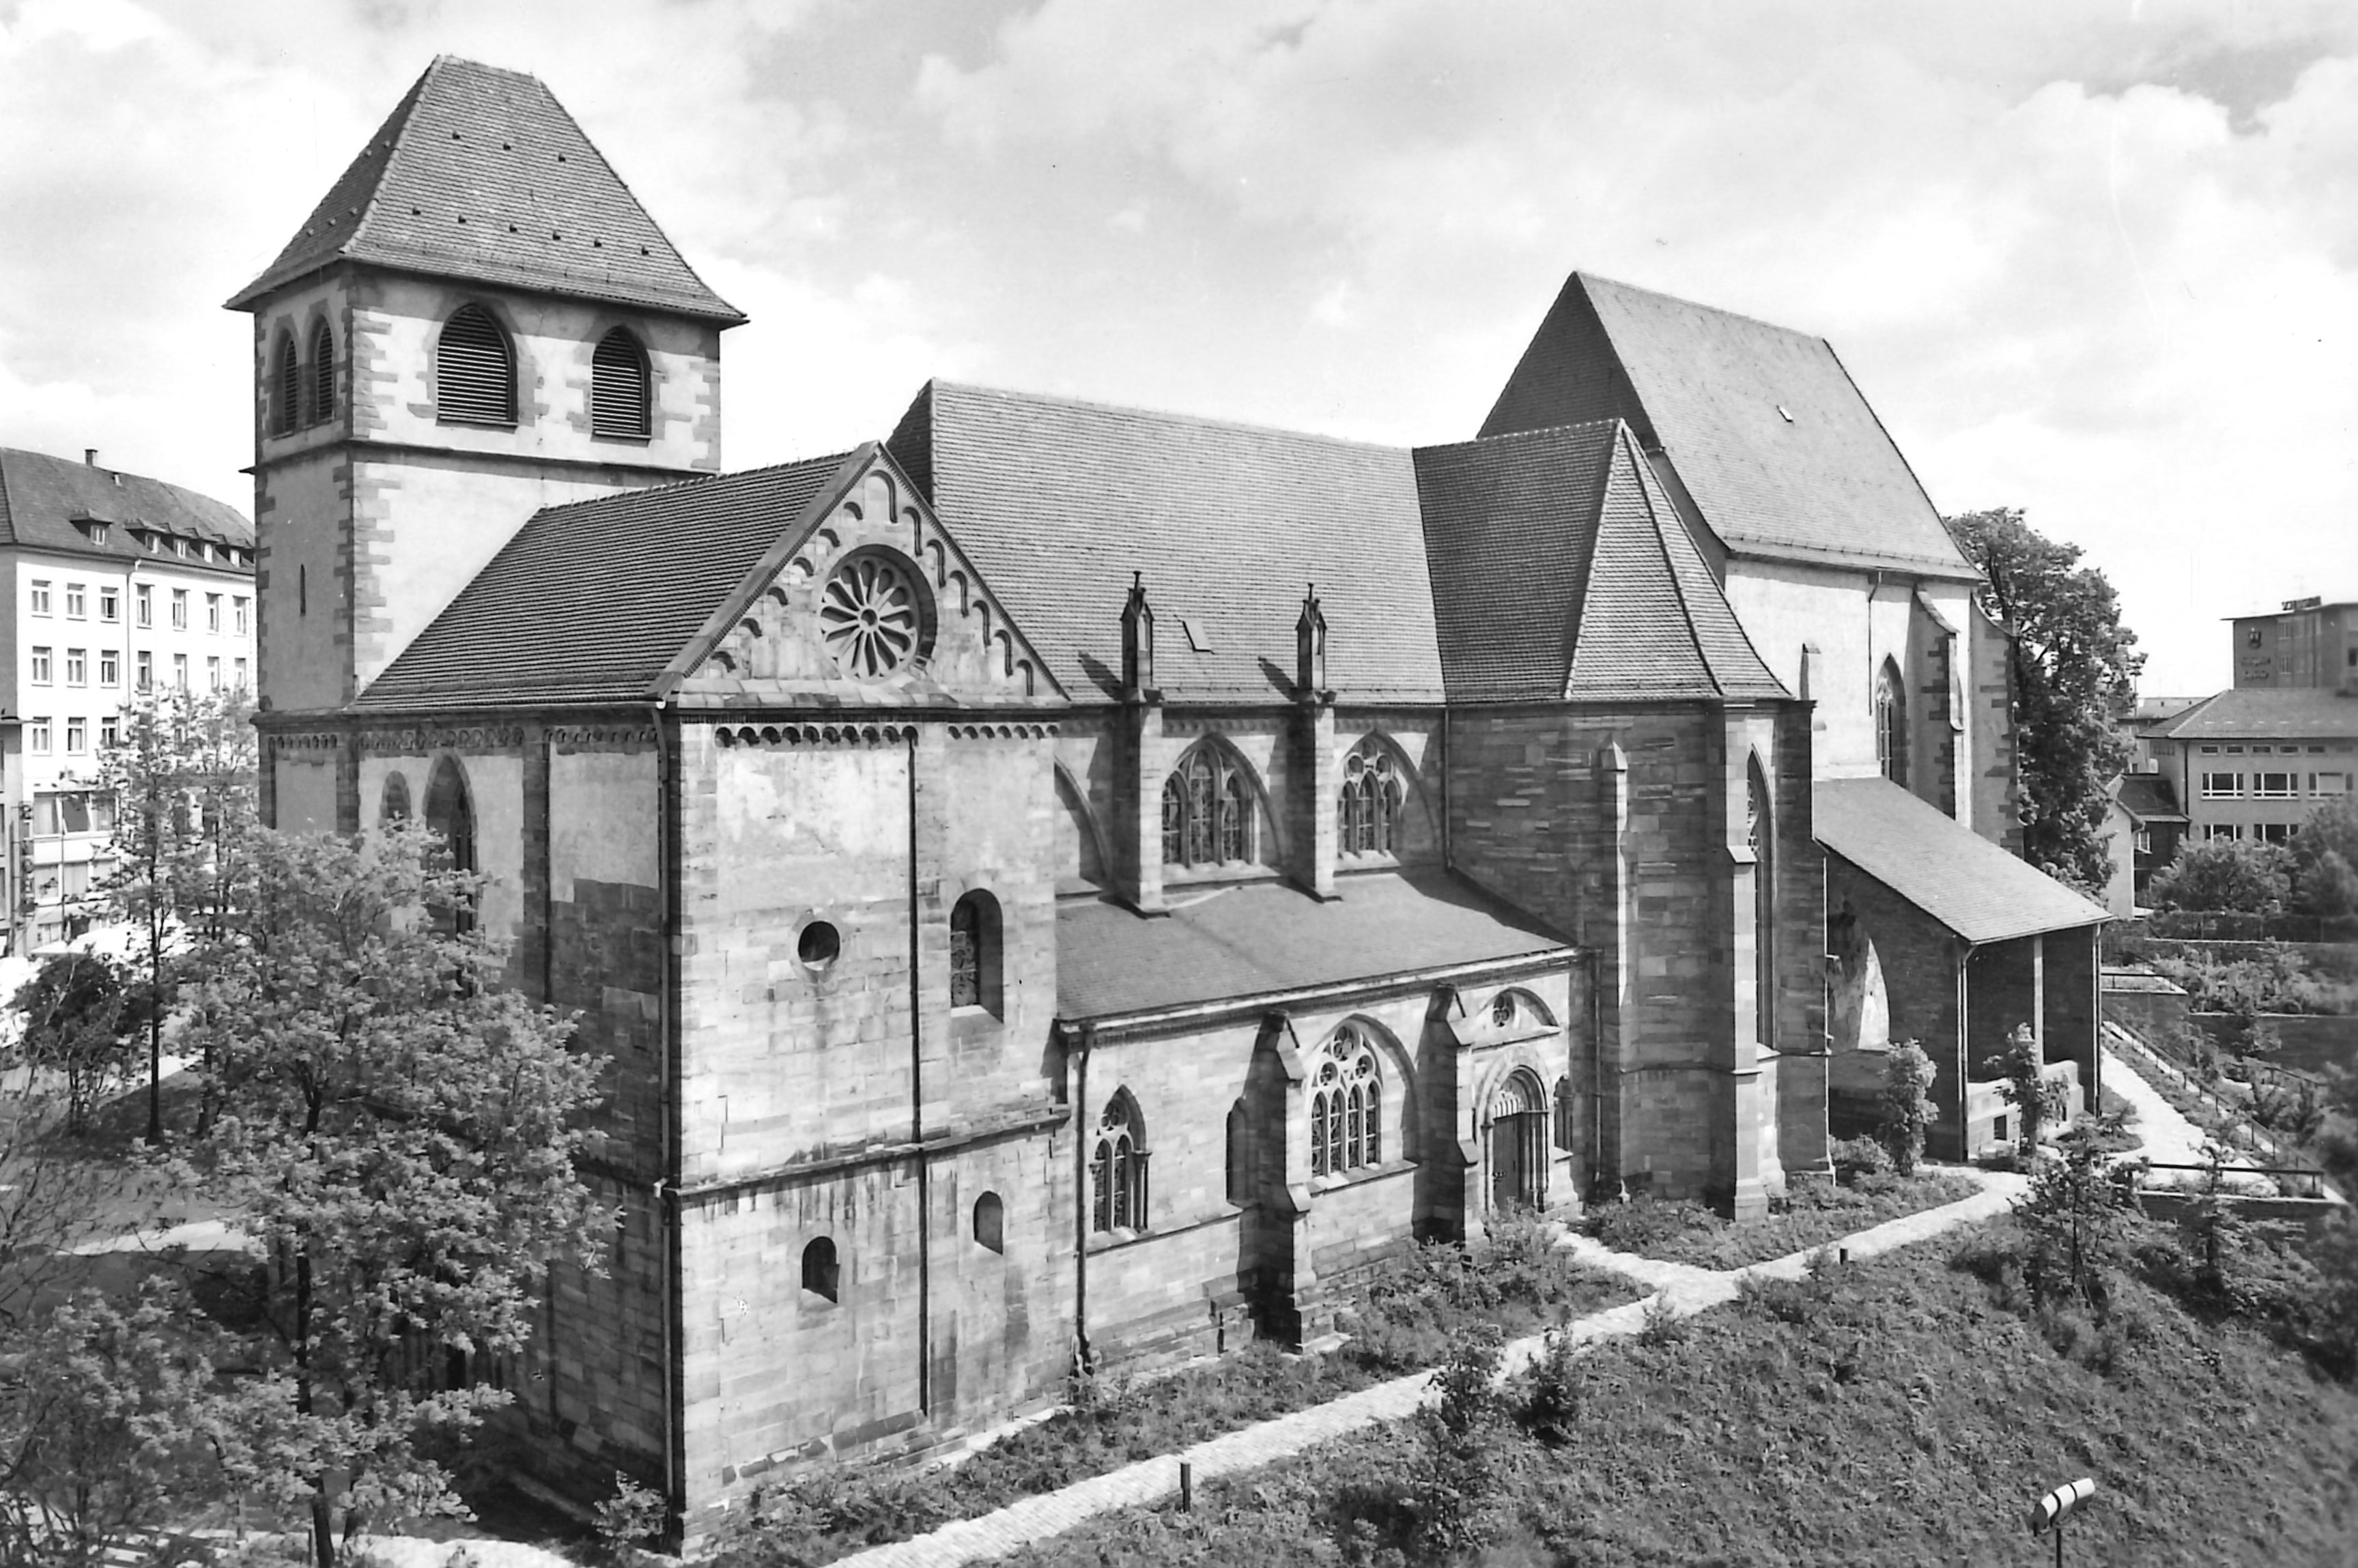 Schwarz-weiße fotografische Postkarte der Schlosskirche St. Michael in Pforzheim.